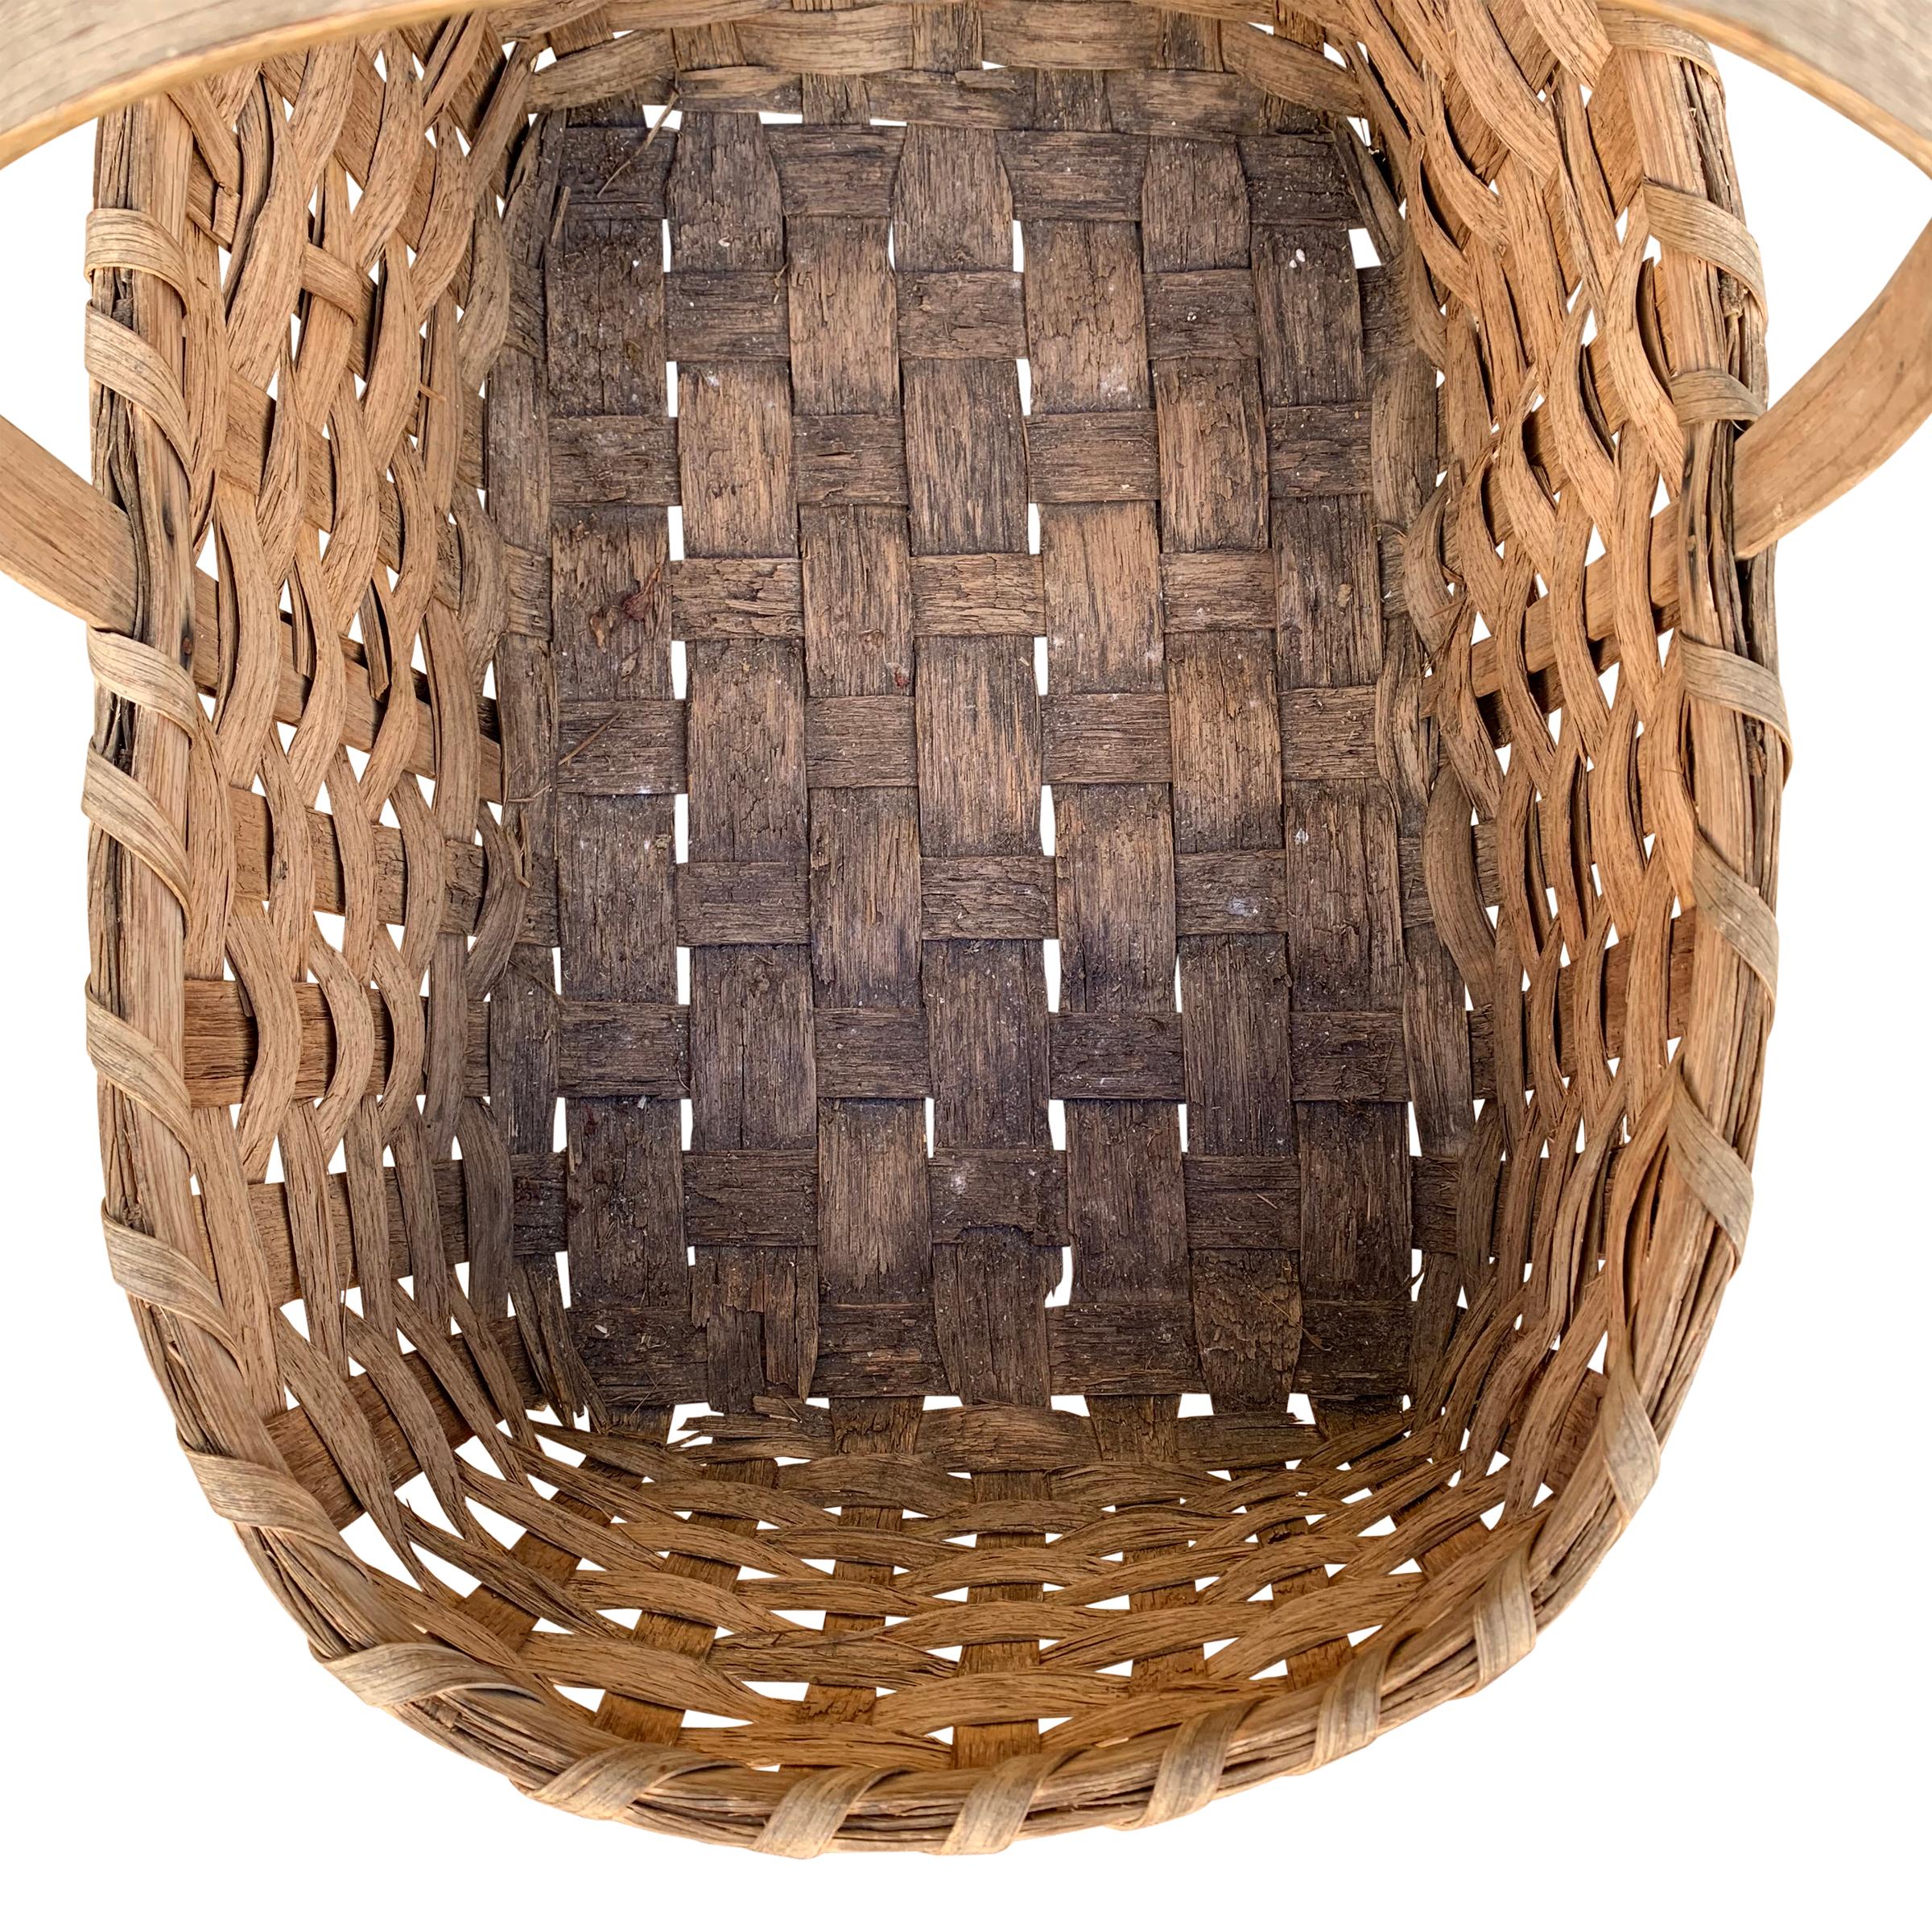 Country Early 20th Century American Oak Splint Gathering Basket